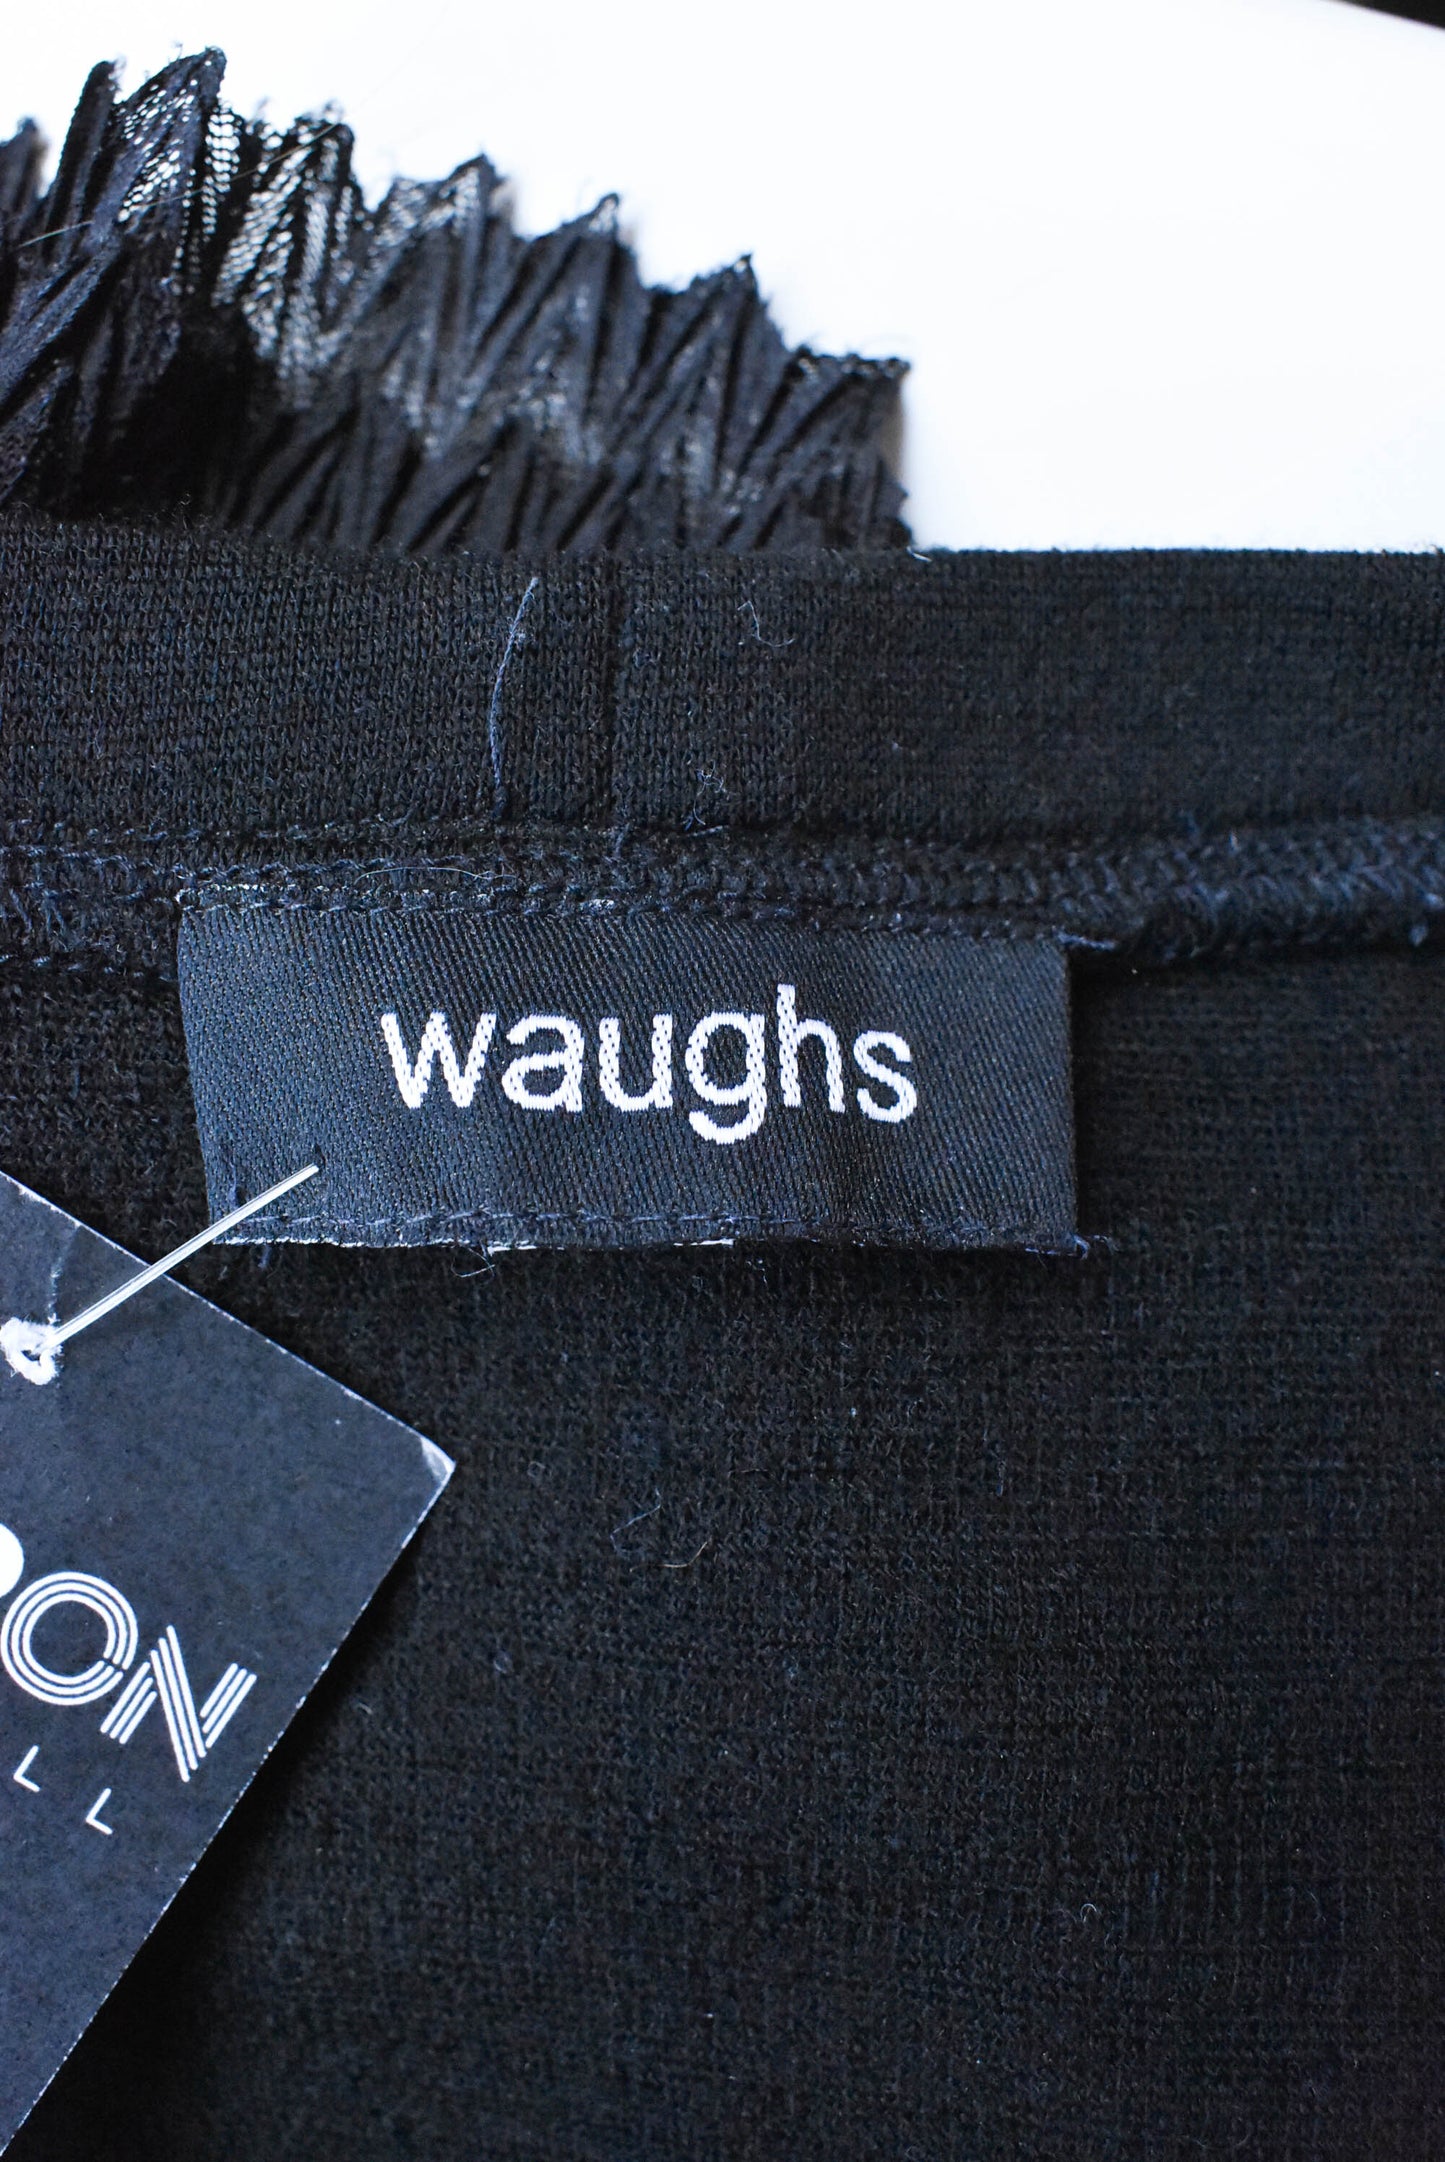 Waughs fringed black wool top